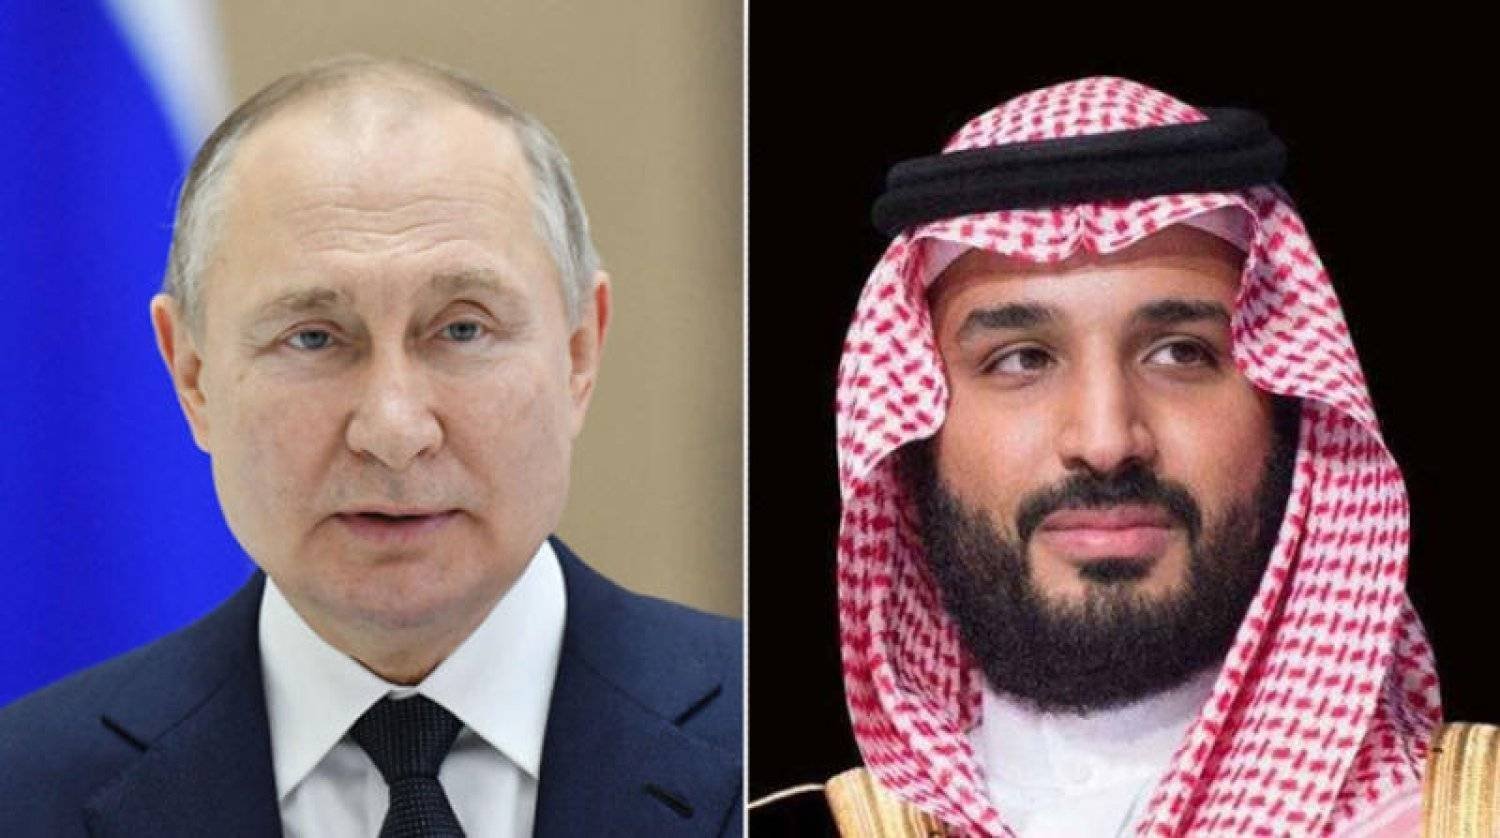 ولي العهد السعودي الأمير محمد بن سلمان والرئيس الروسي فلاديمير بوتين (الشرق الأوسط)